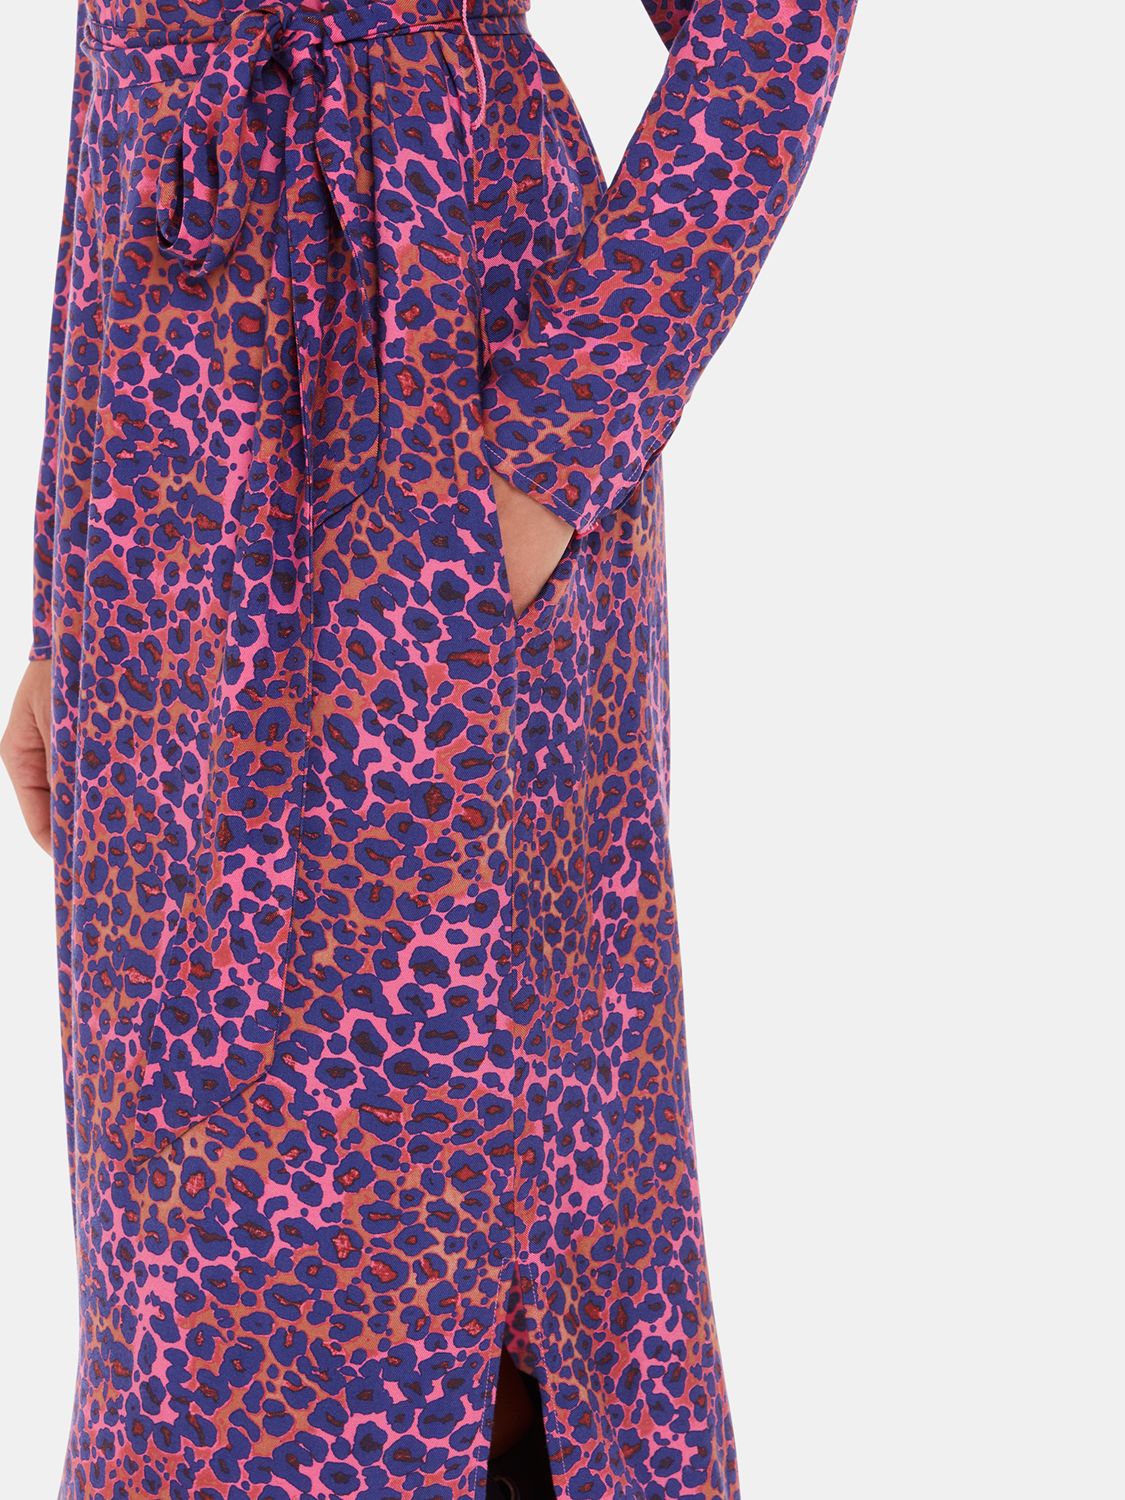 Whistles Mottled Leopard Midi Dress, Pink/Multi, 10